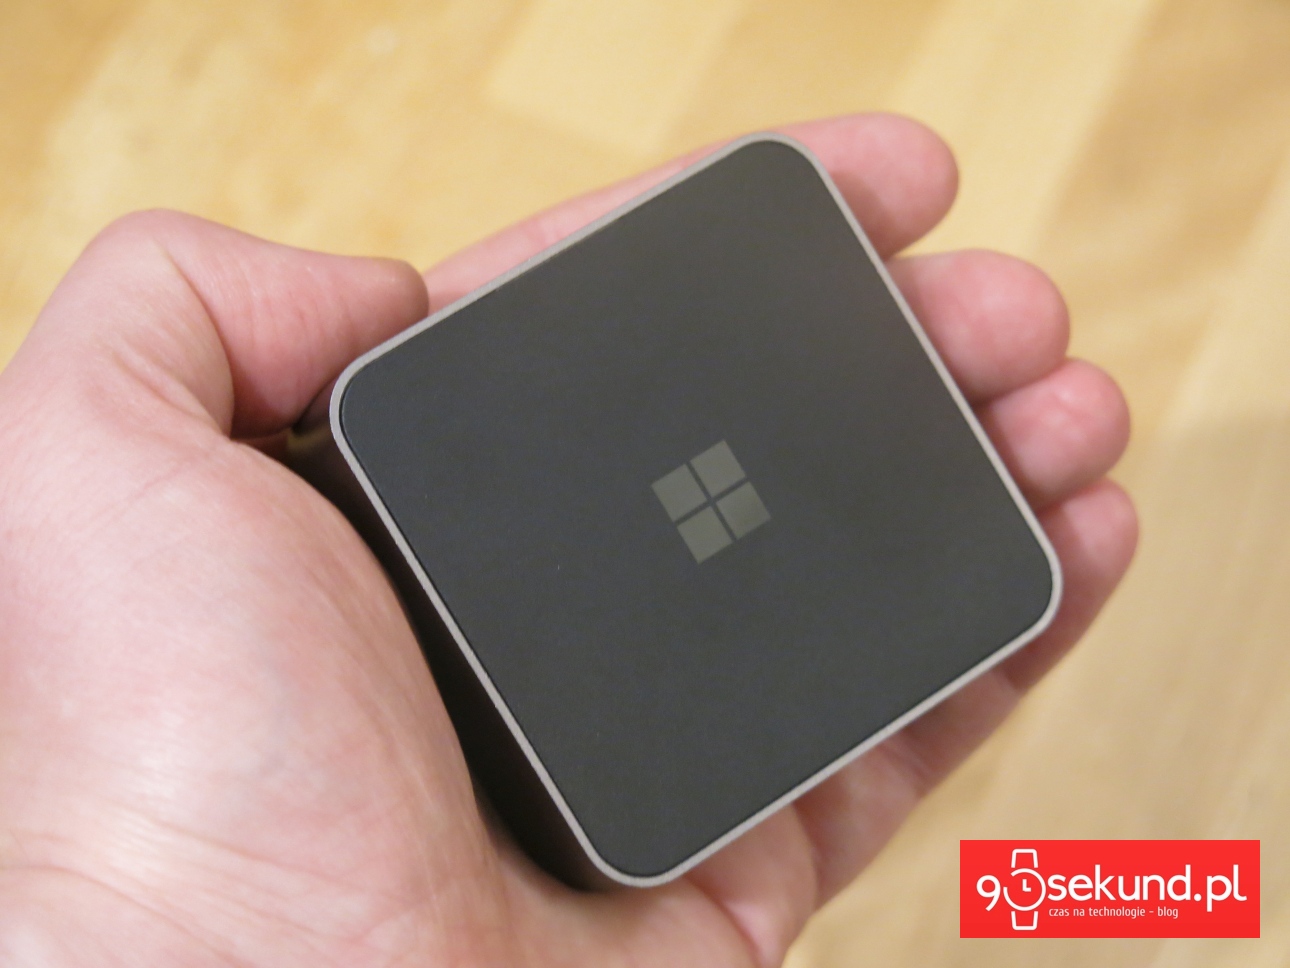 Recenzja Microsoft Lumia 950XL - stacja dokująca do Trybu Continuum - 90sekund.pl